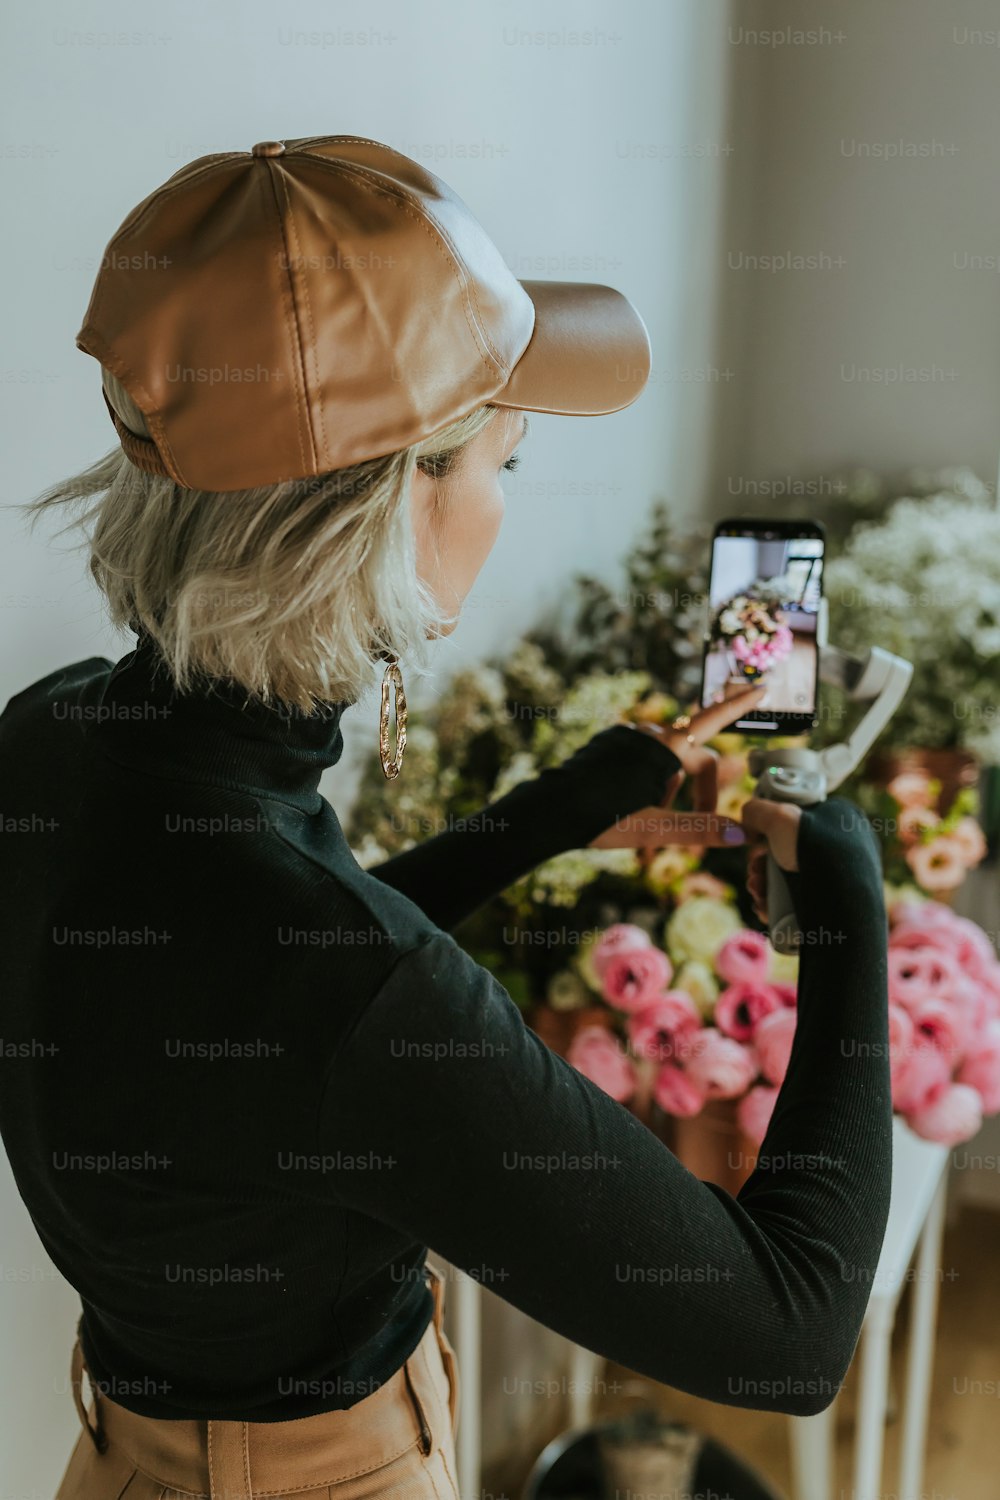 Une femme prenant une photo de fleurs avec son téléphone portable